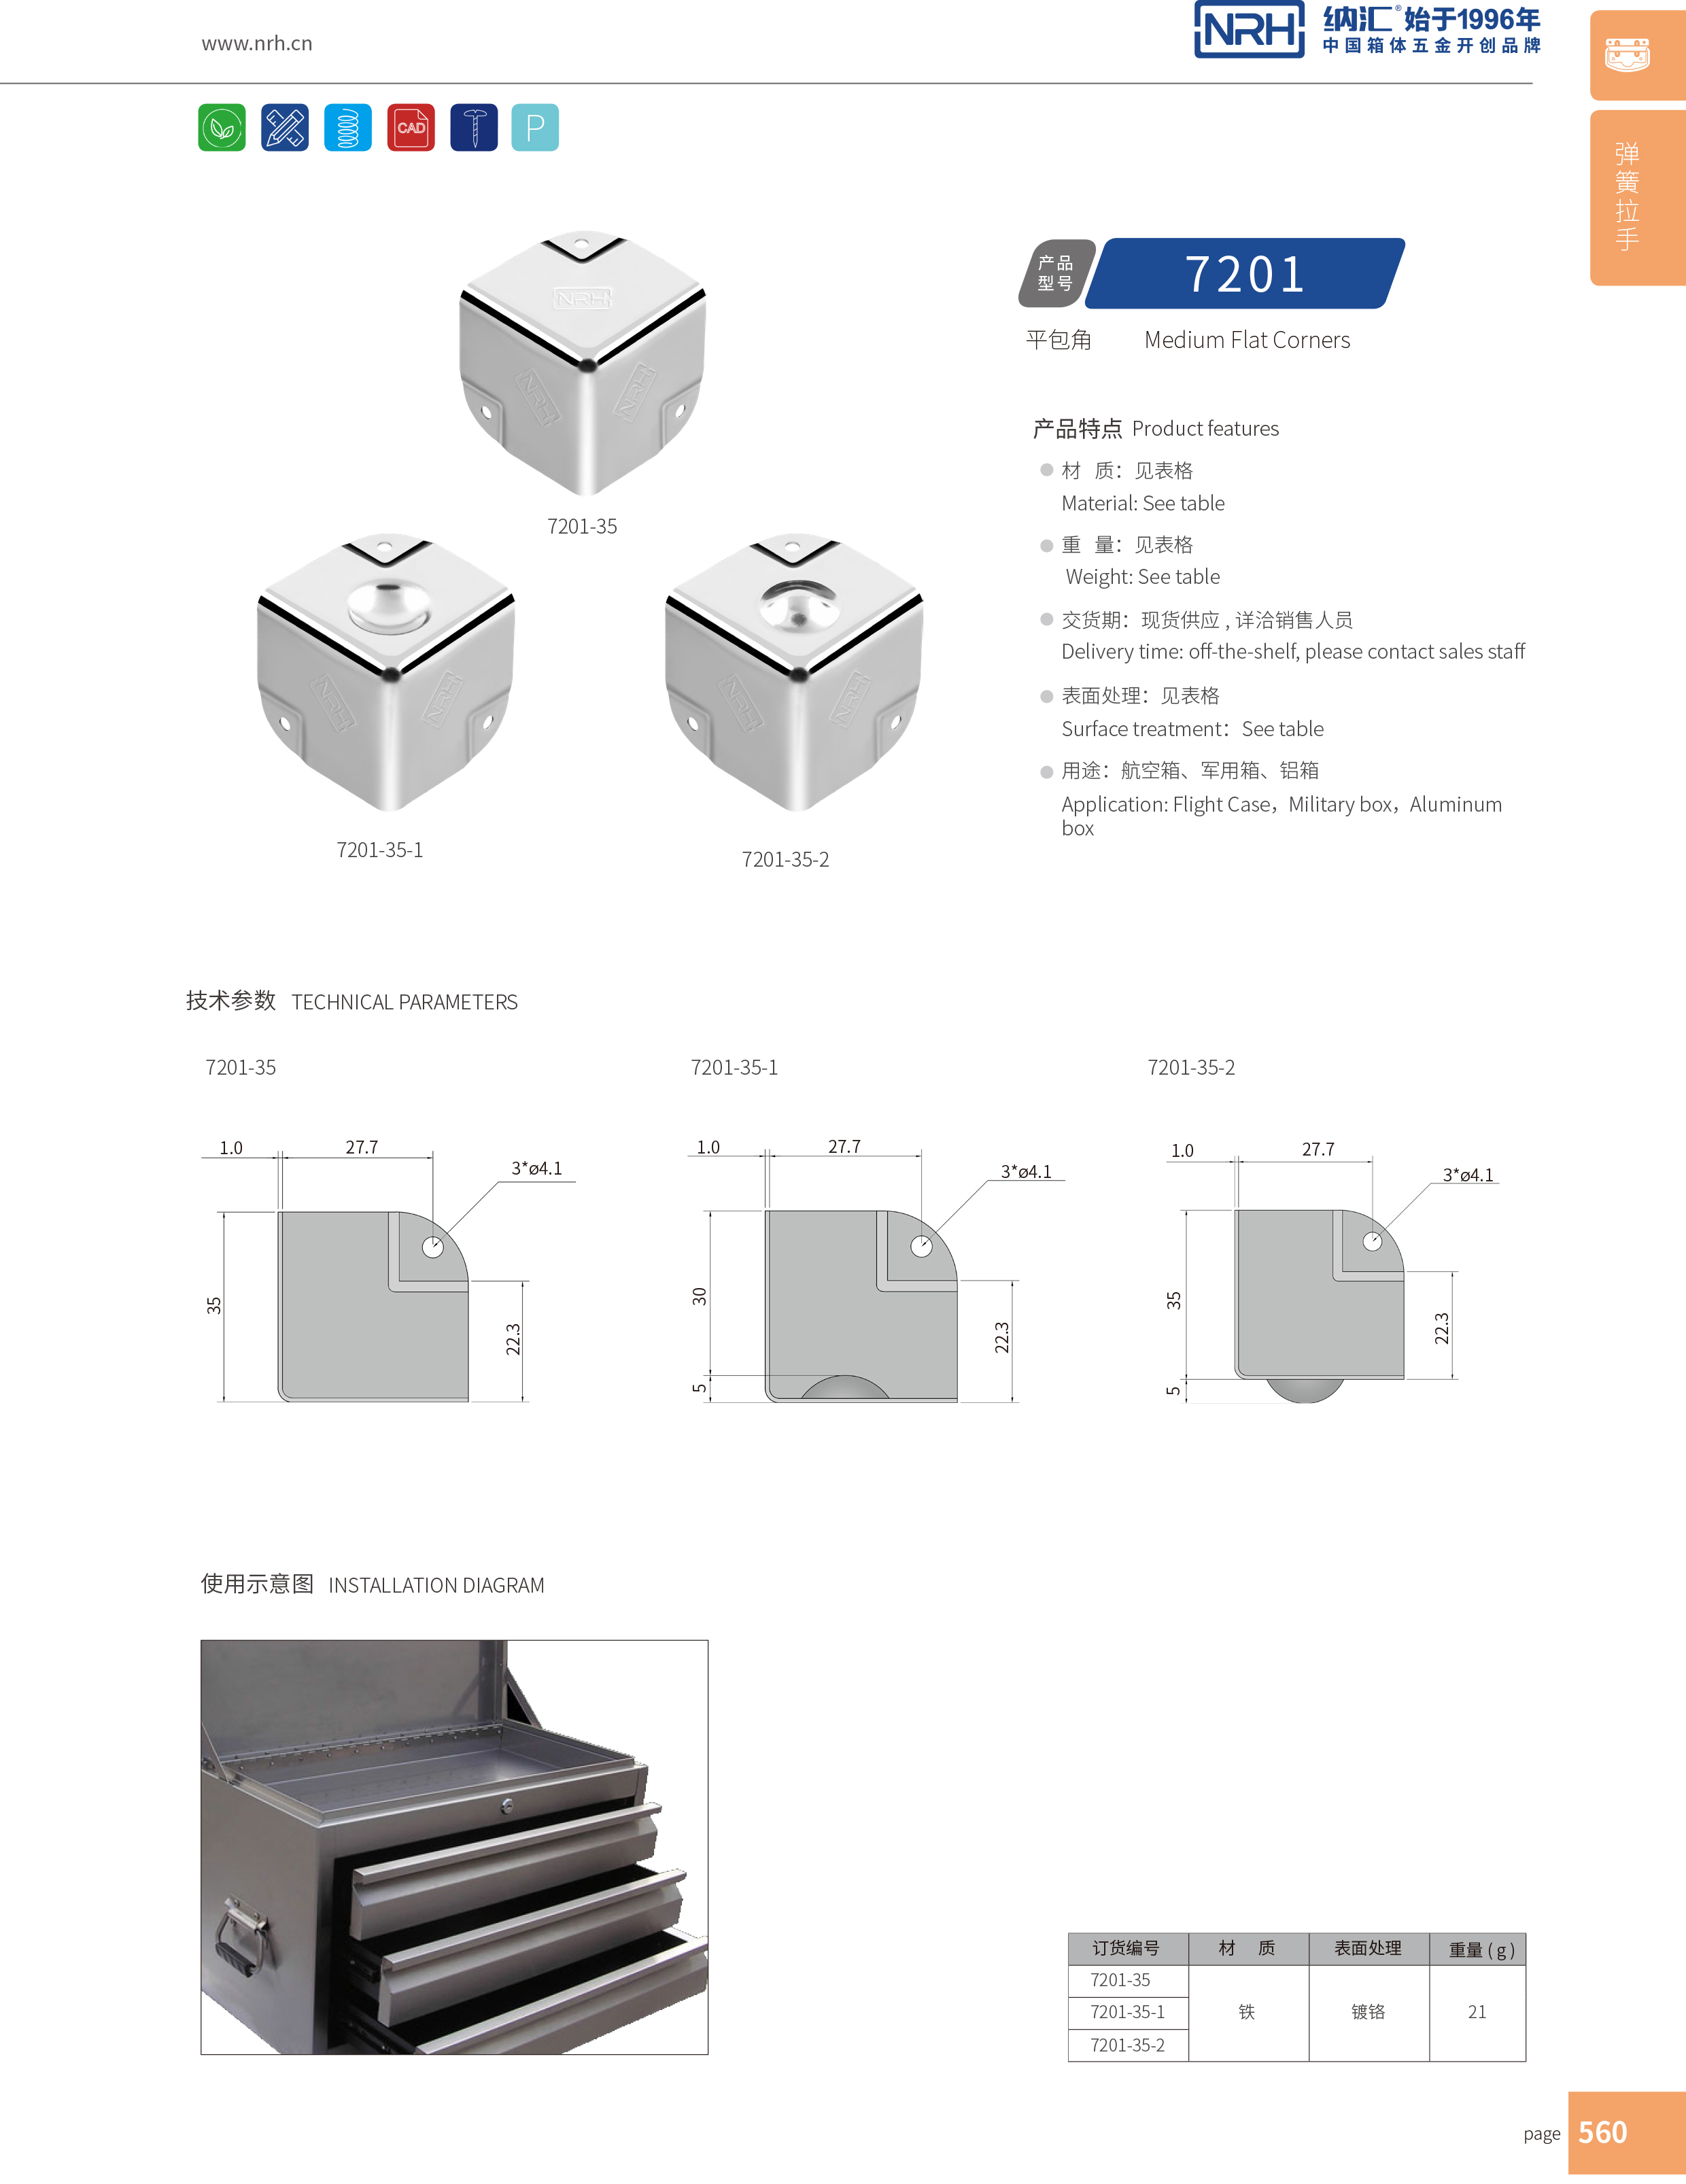 铝箱包角7201-35-1木箱护角箱包五金包角铝箱包角